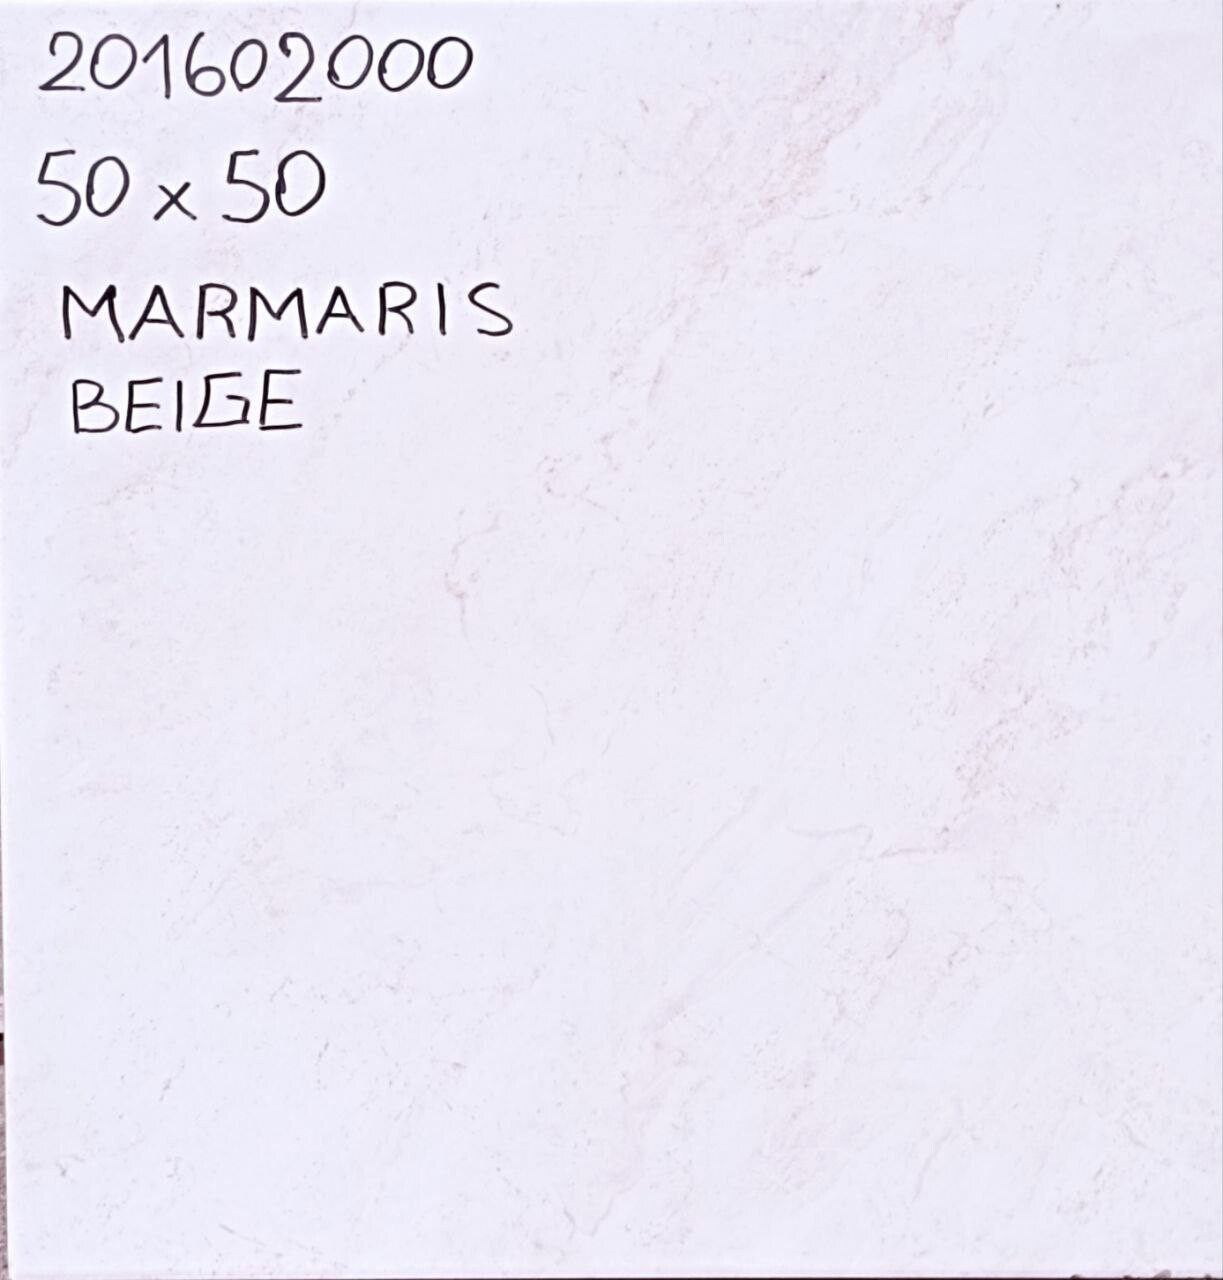 CERAMICA 50 X 50 PISO/PARED MARMARIS-BEIGE-50 BRILLO PEI IV (10)